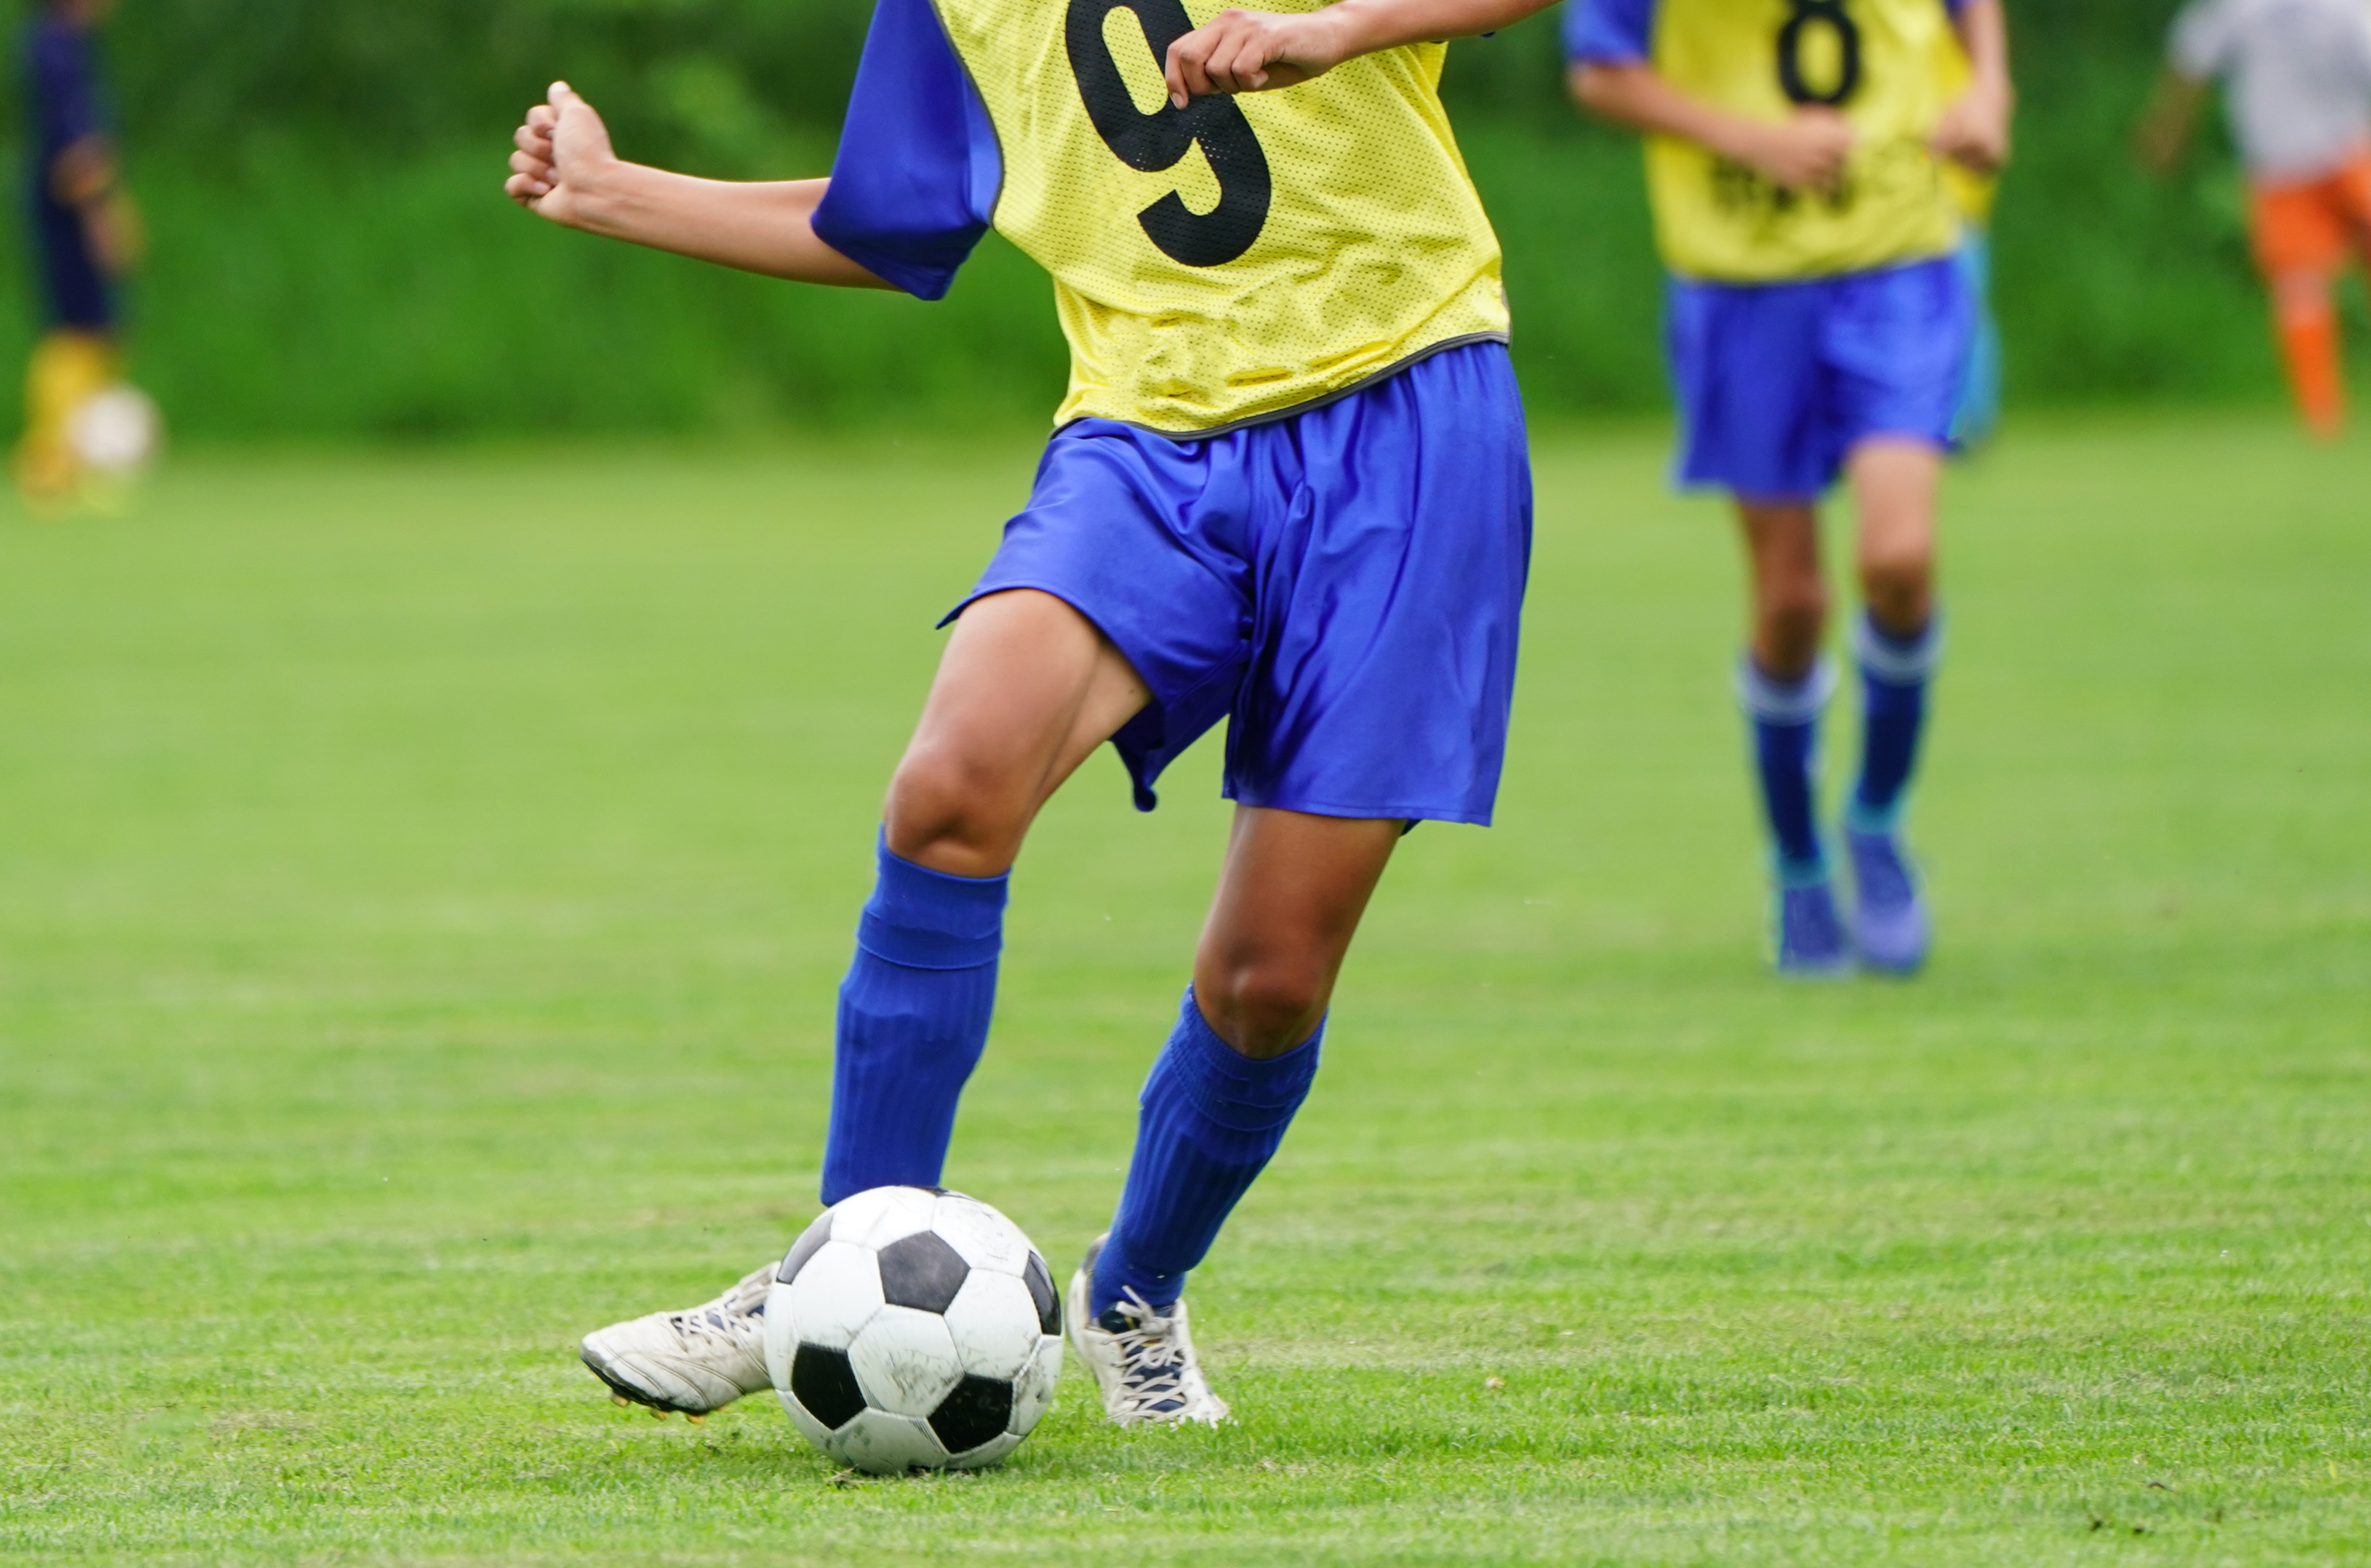 サッカー シュート練習する時に意識するポイント3つ ジュニアサッカーの上達練習指導法